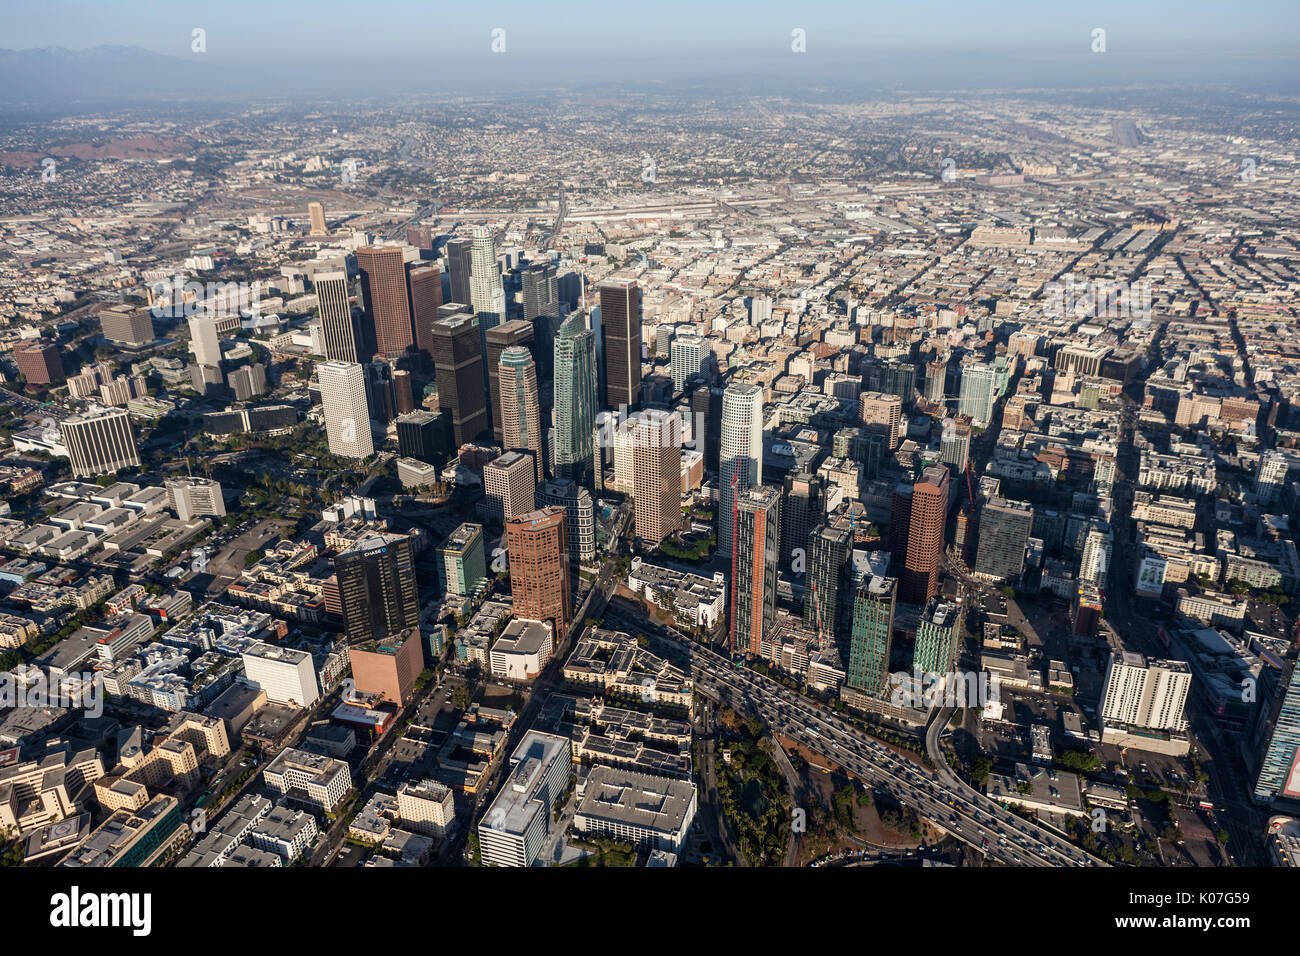 Los Angeles, Californie, USA - 7 août 2017 : Après-midi vue aérienne du centre-ville de Tours et des rues urbaines le long du port 100 freeway. Banque D'Images